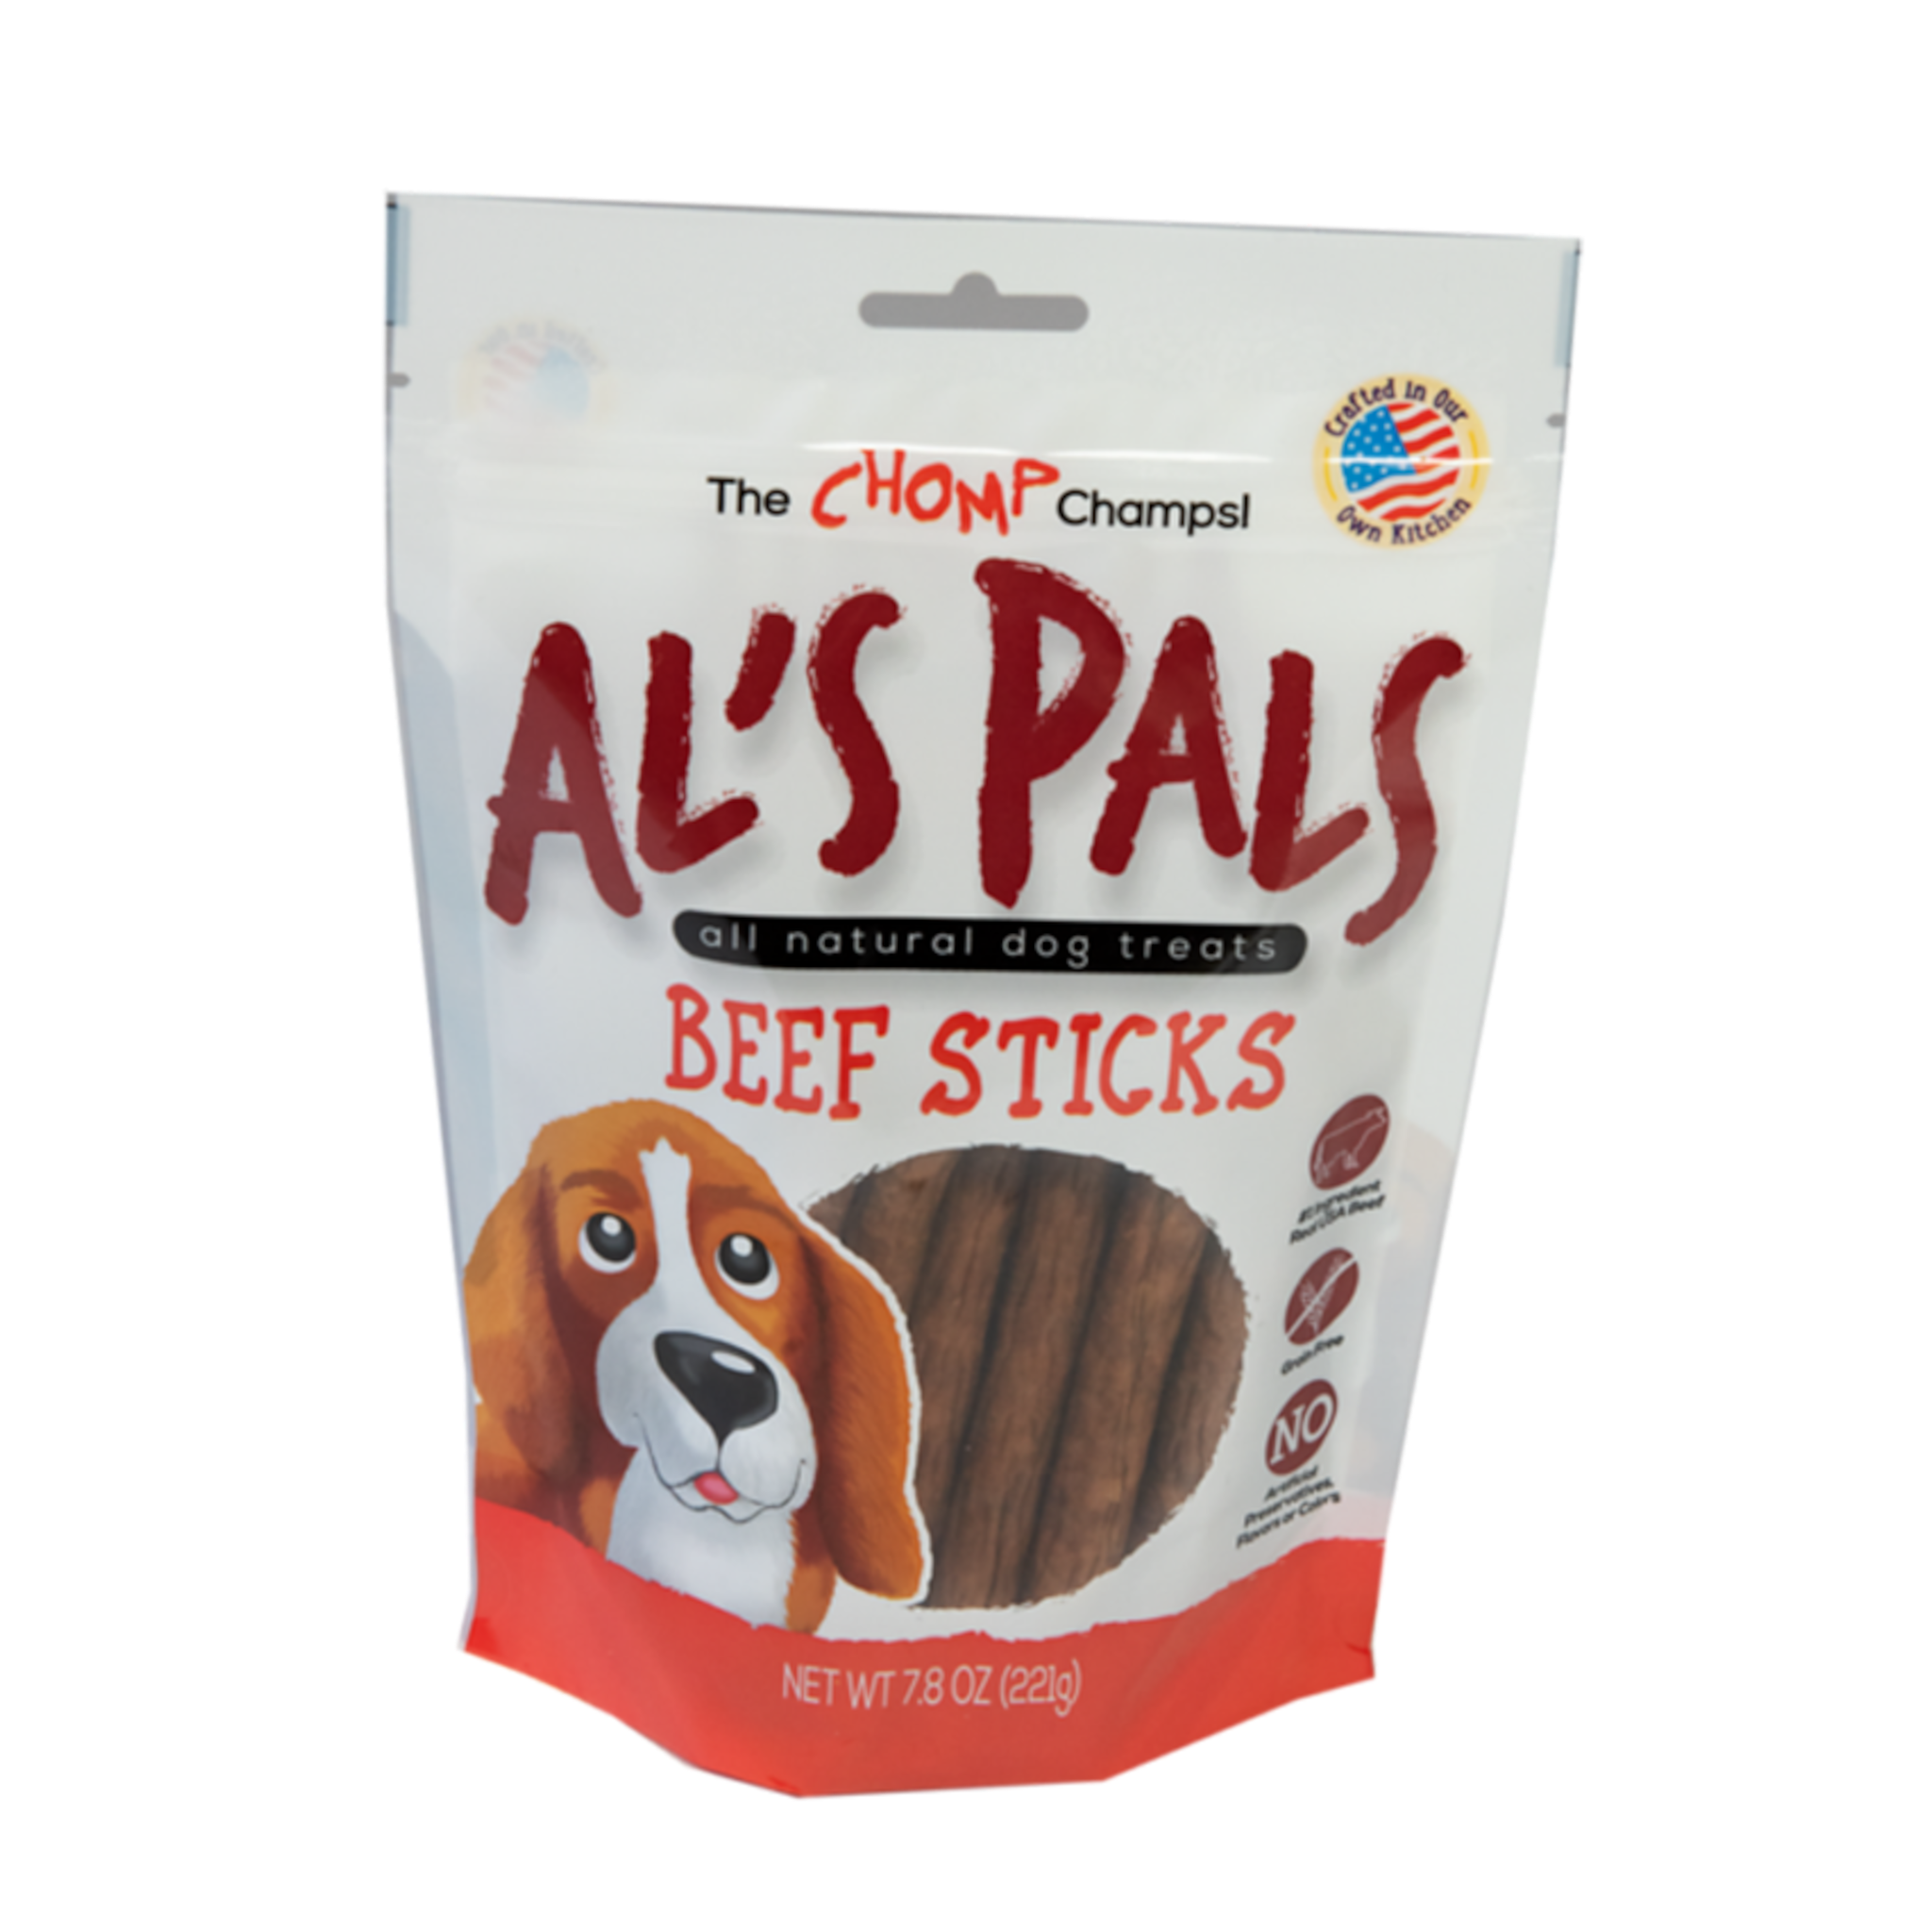 Al's Pals All Natural Beef Sticks